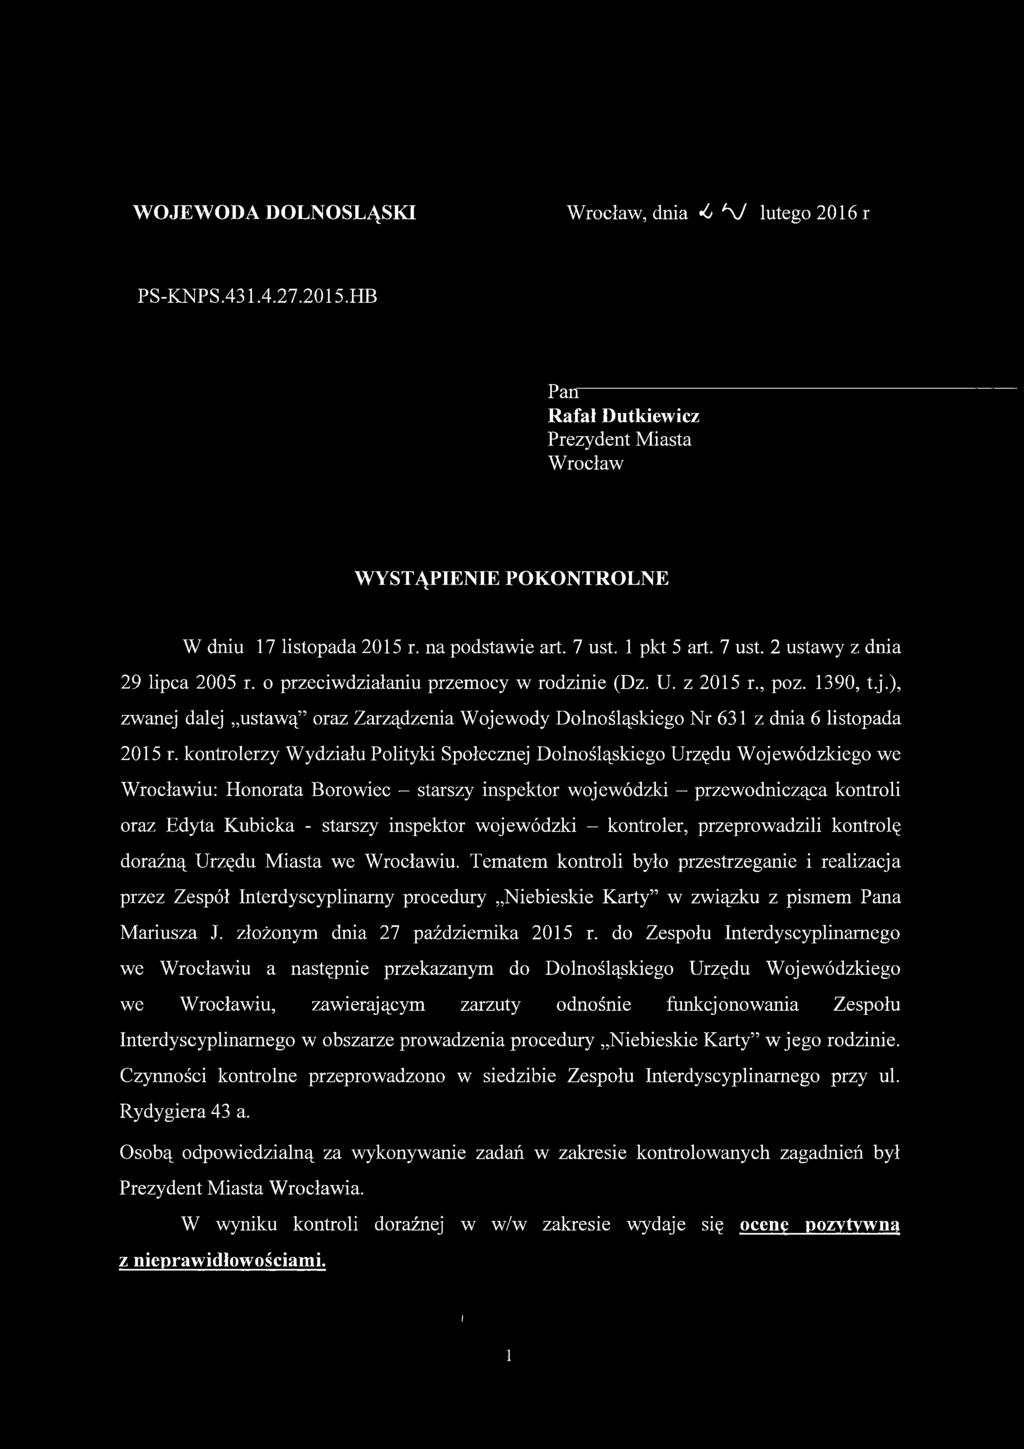 ), zwanej dalej ustawą oraz Zarządzenia Wojewody Dolnośląskiego Nr 631 z dnia 6 listopada 2015 r.